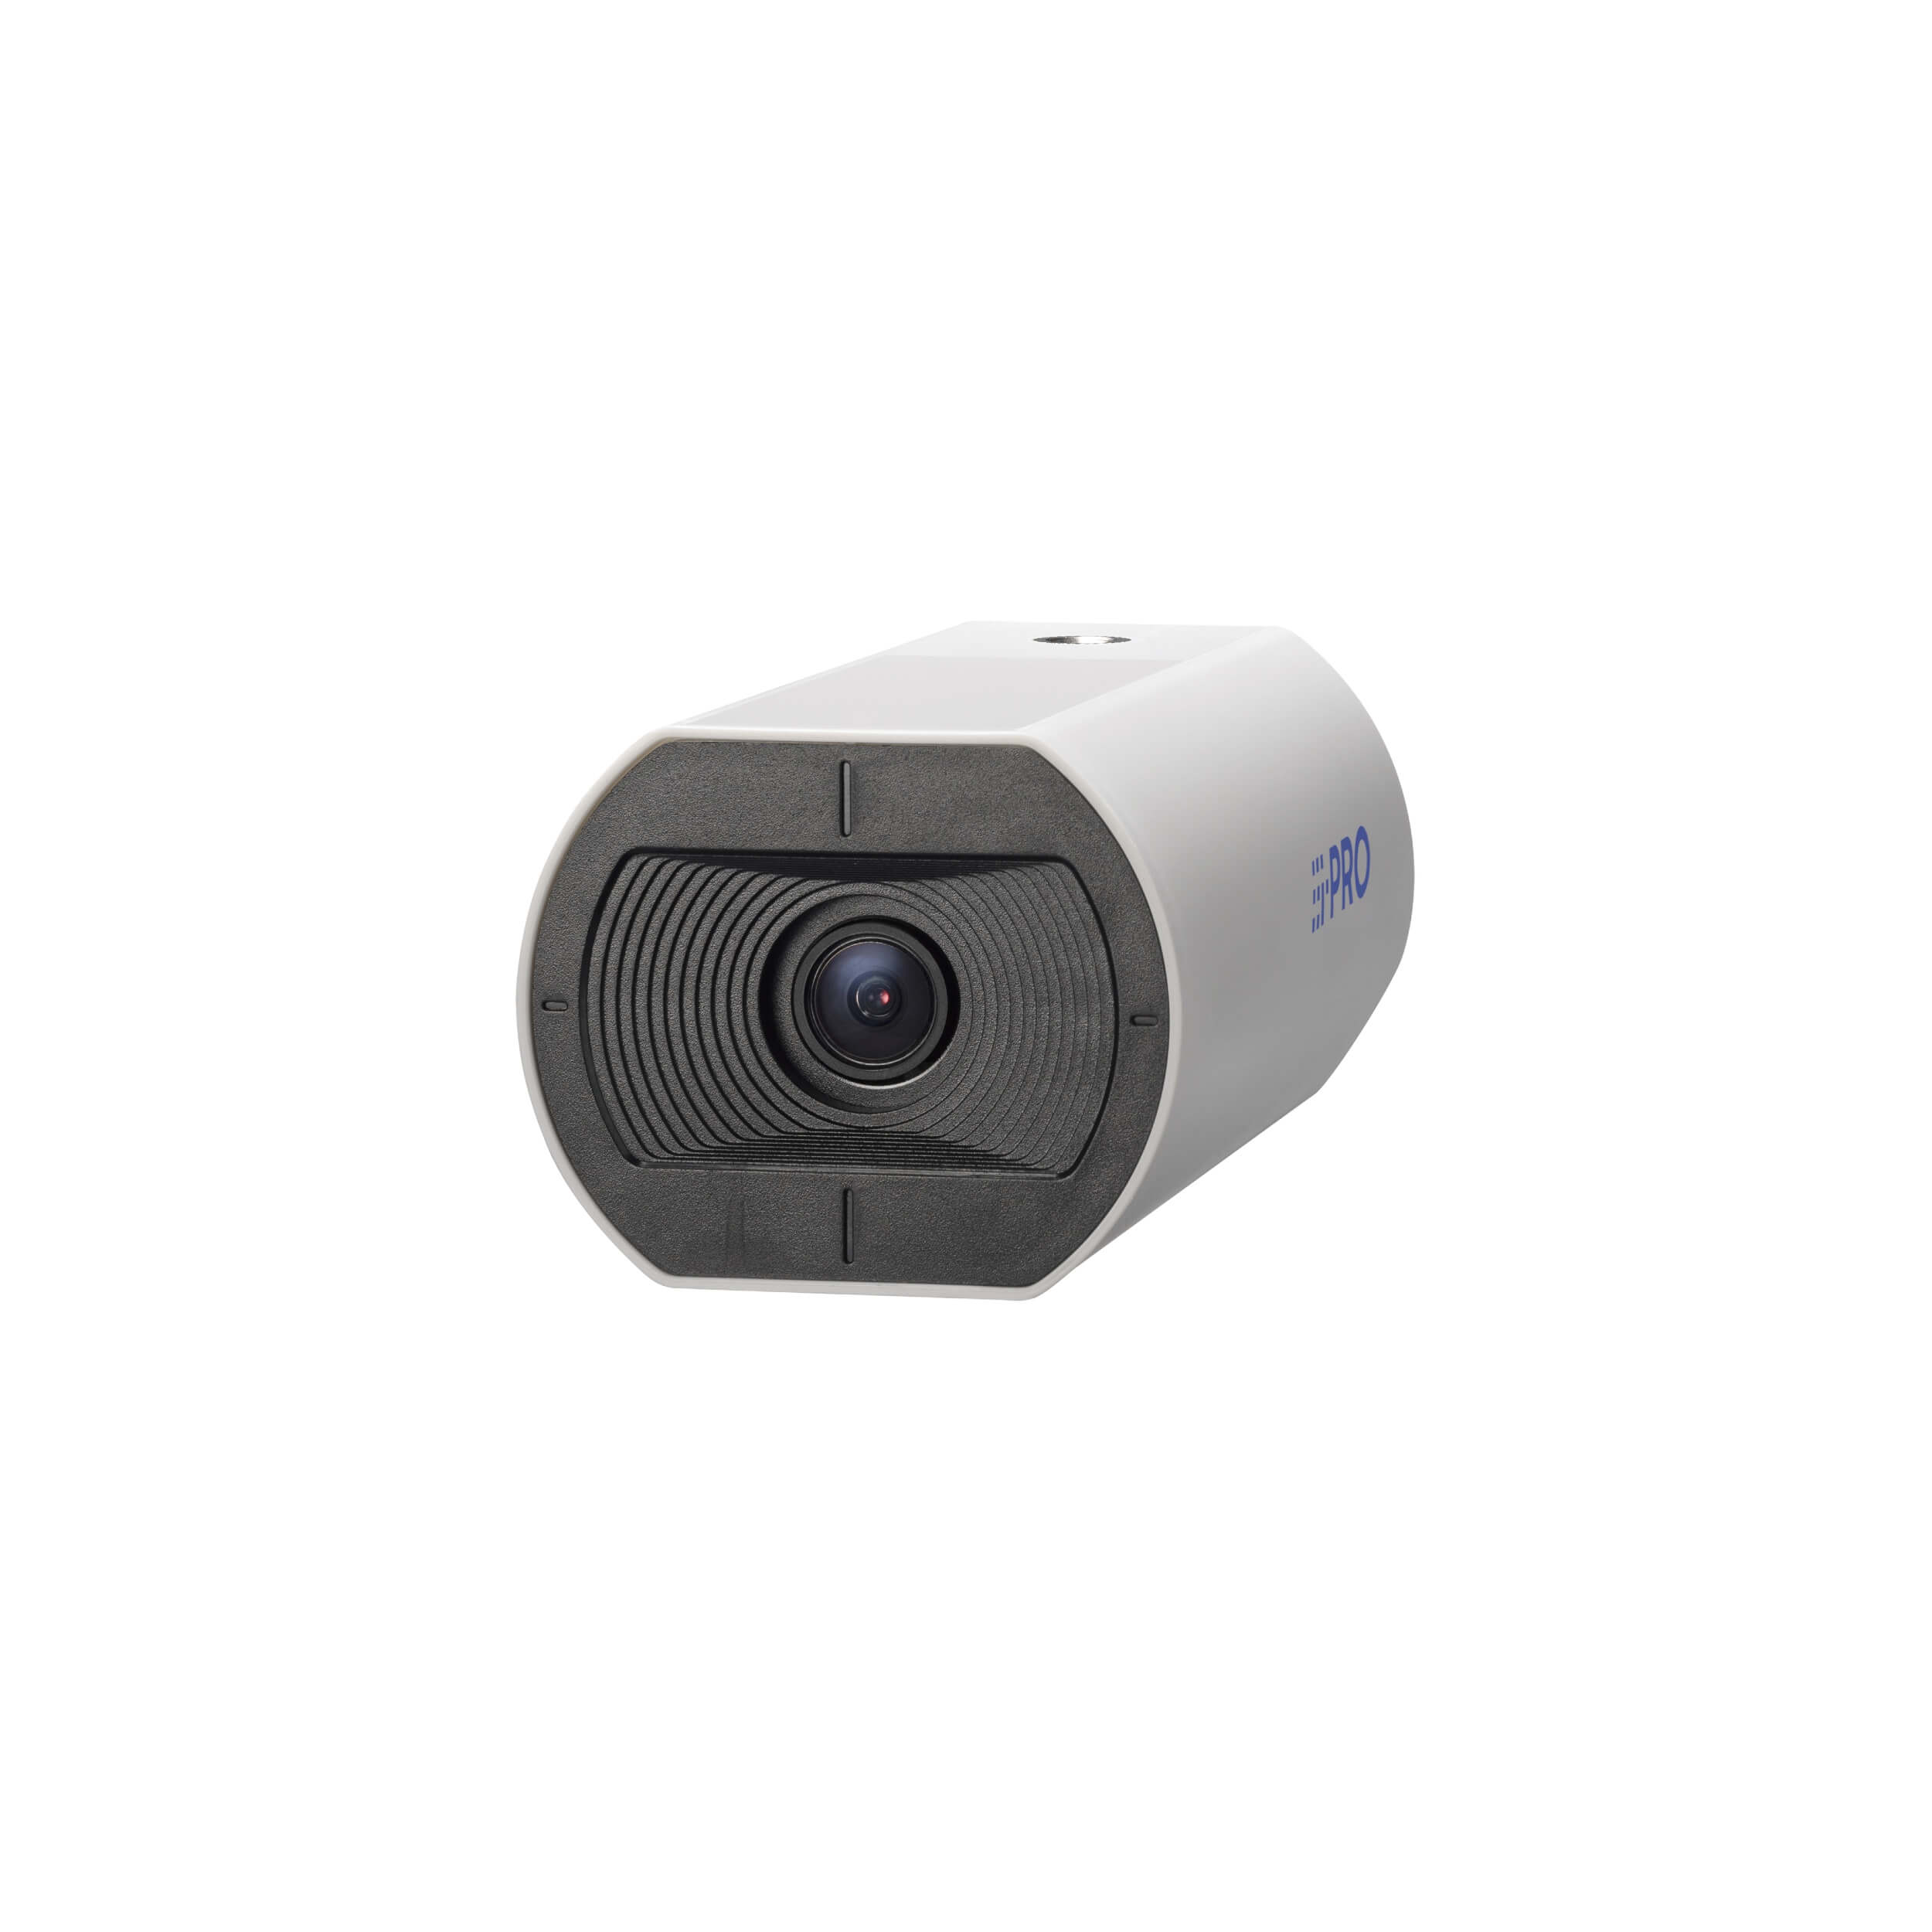 i-PRO WV-U1130A 2 Megapixel Network Indoor Box Camera with 3.2mm Lens